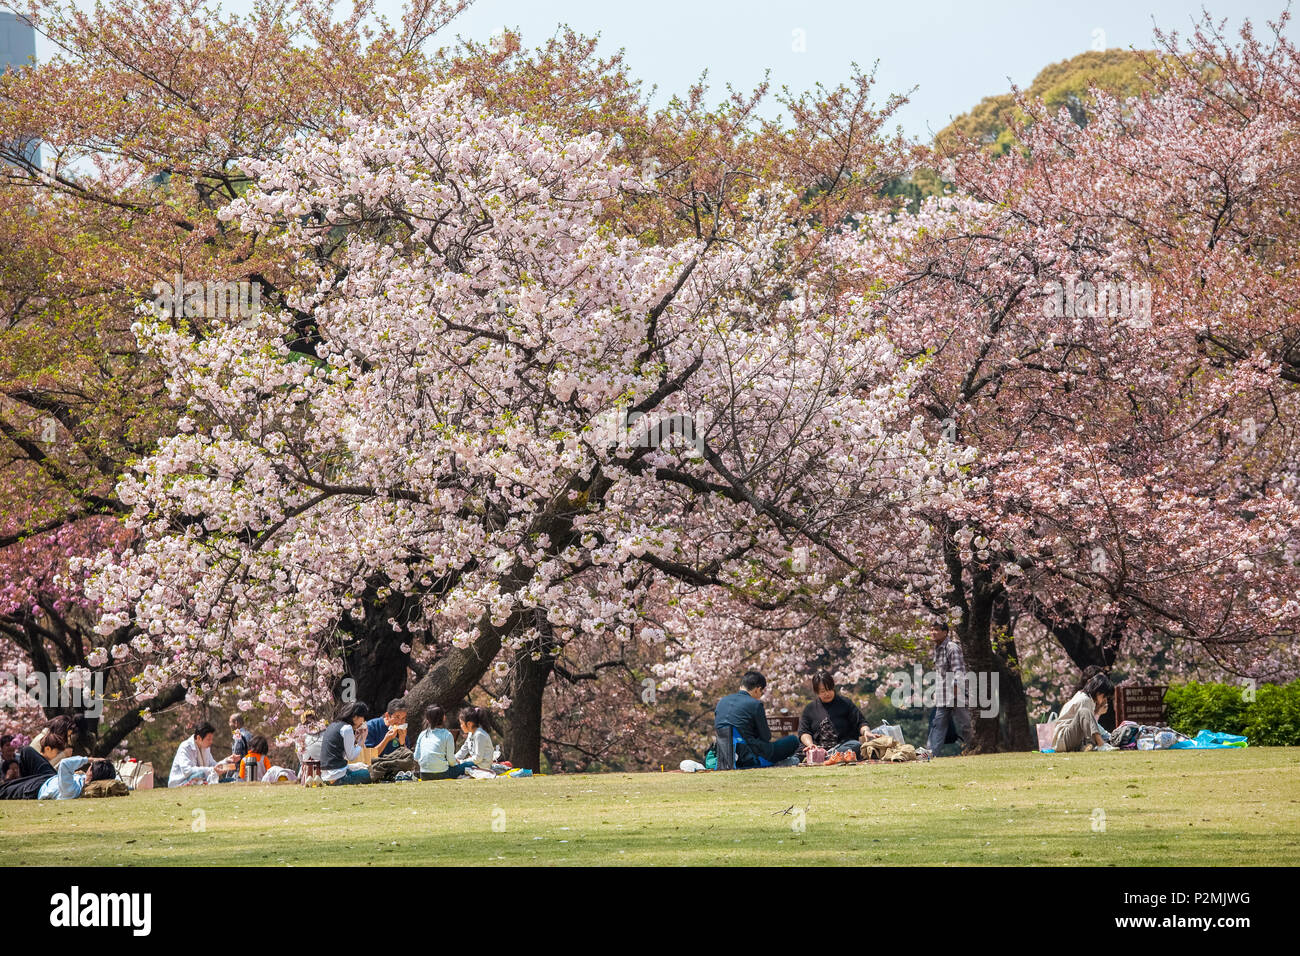 Japanese families eating during picnic at cherry blossom in Shinjuku Gyoen, Shinjuku, Tokyo, Japan Stock Photo